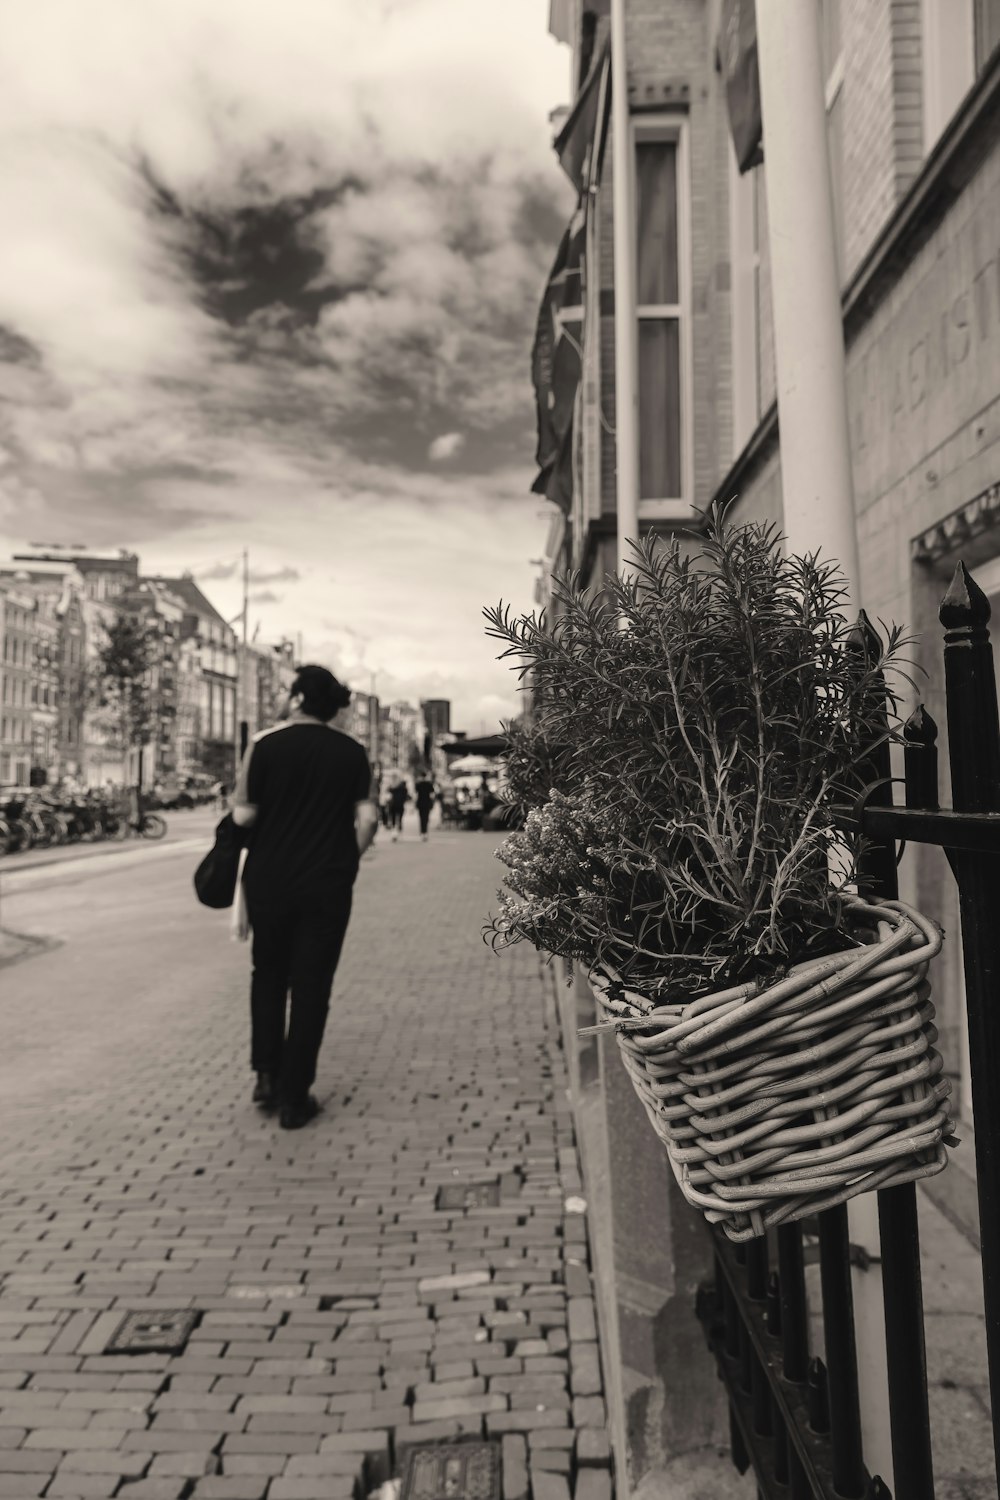 Una foto en blanco y negro de un hombre caminando por una calle